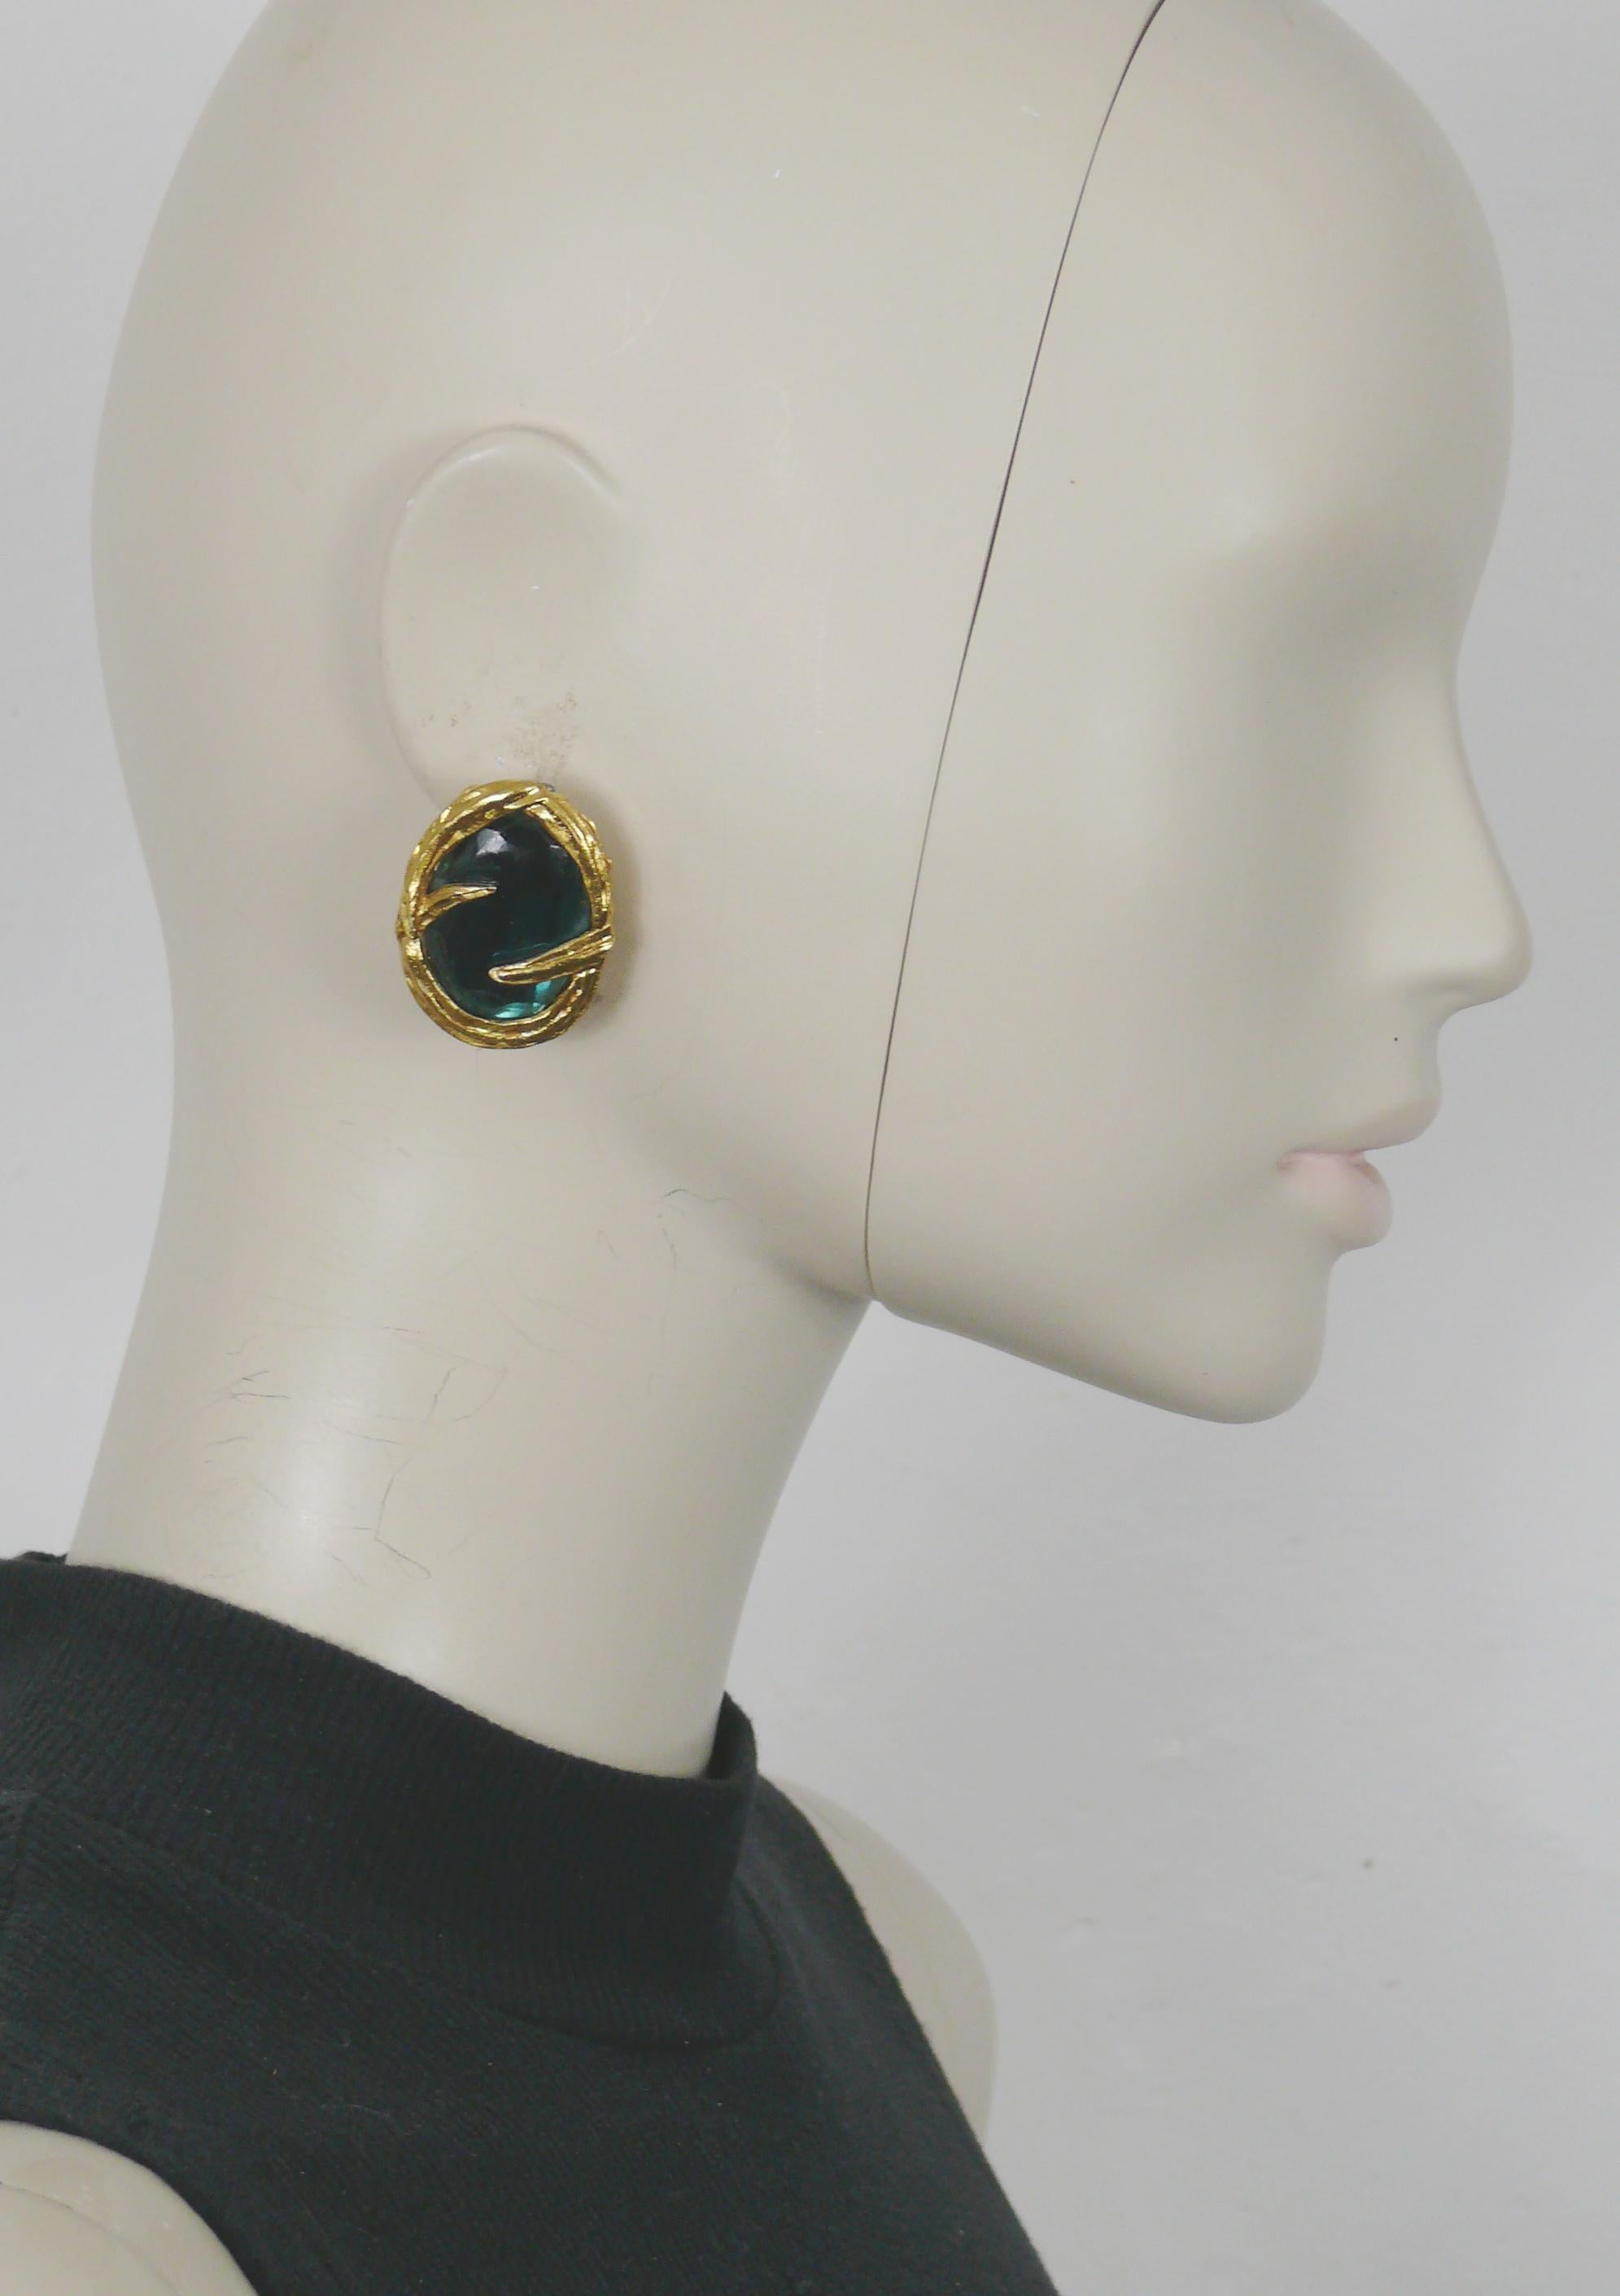 YVES SAINT LAURENT Vintage-Ohrringe in ovaler Form, goldfarben, mit einem großen, unregelmäßigen, facettierten blauen Harz-Cabochon verziert.

Geprägtes YSL Made in France.

Ungefähre Maße: Höhe ca. 3,5 cm (1,38 Zoll) / max. Breite ca. 2,5 cm (0,98